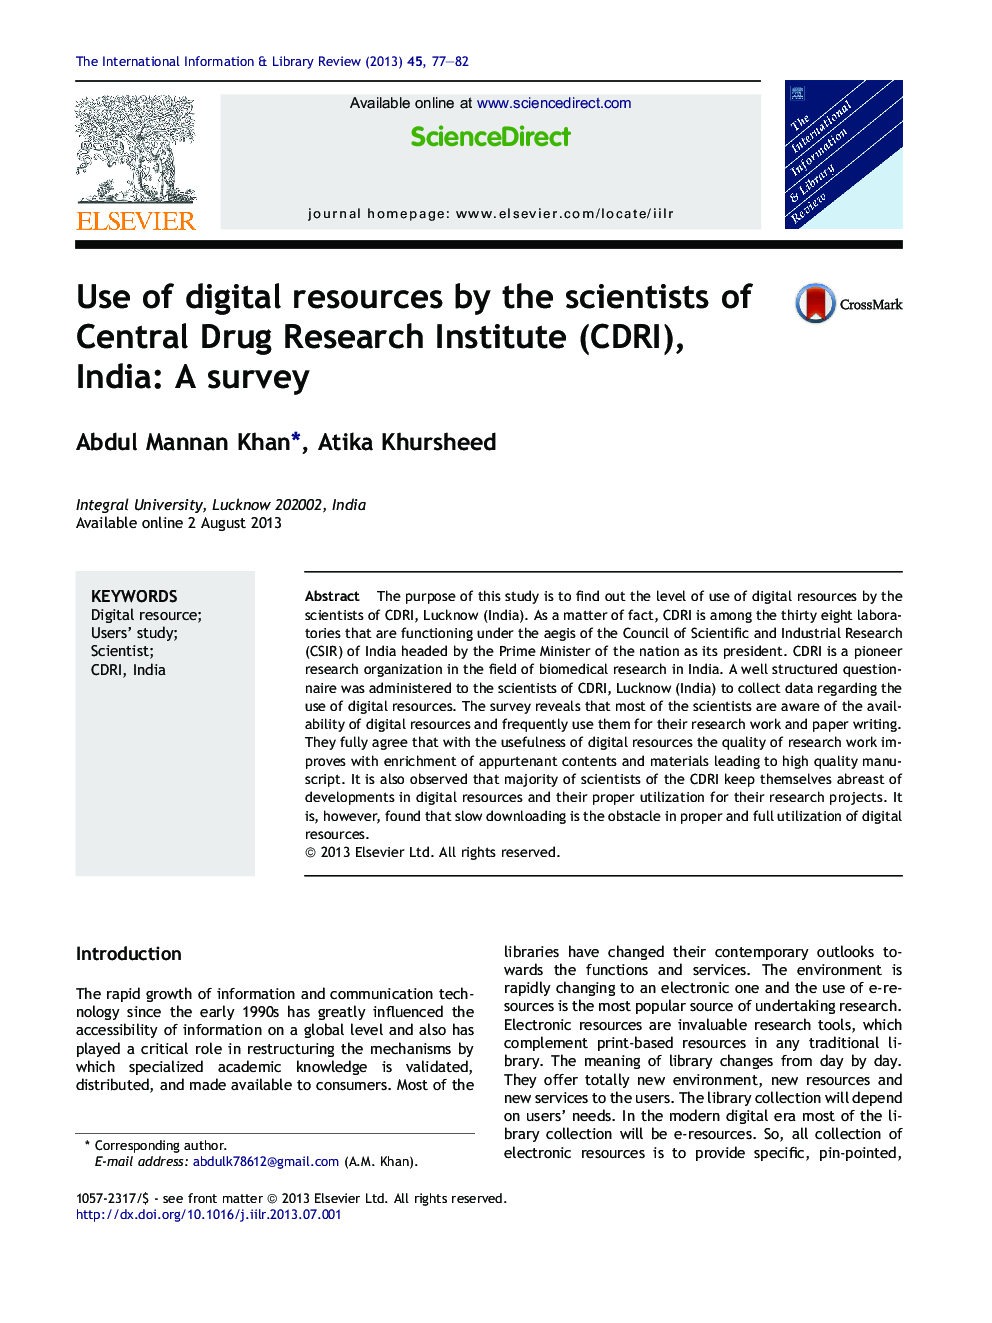 استفاده از منابع دیجیتال شده توسط دانشمندان موسسه مرکزی مبارزه با مواد مخدر تحقیقات (CDRI)، هند: بررسی